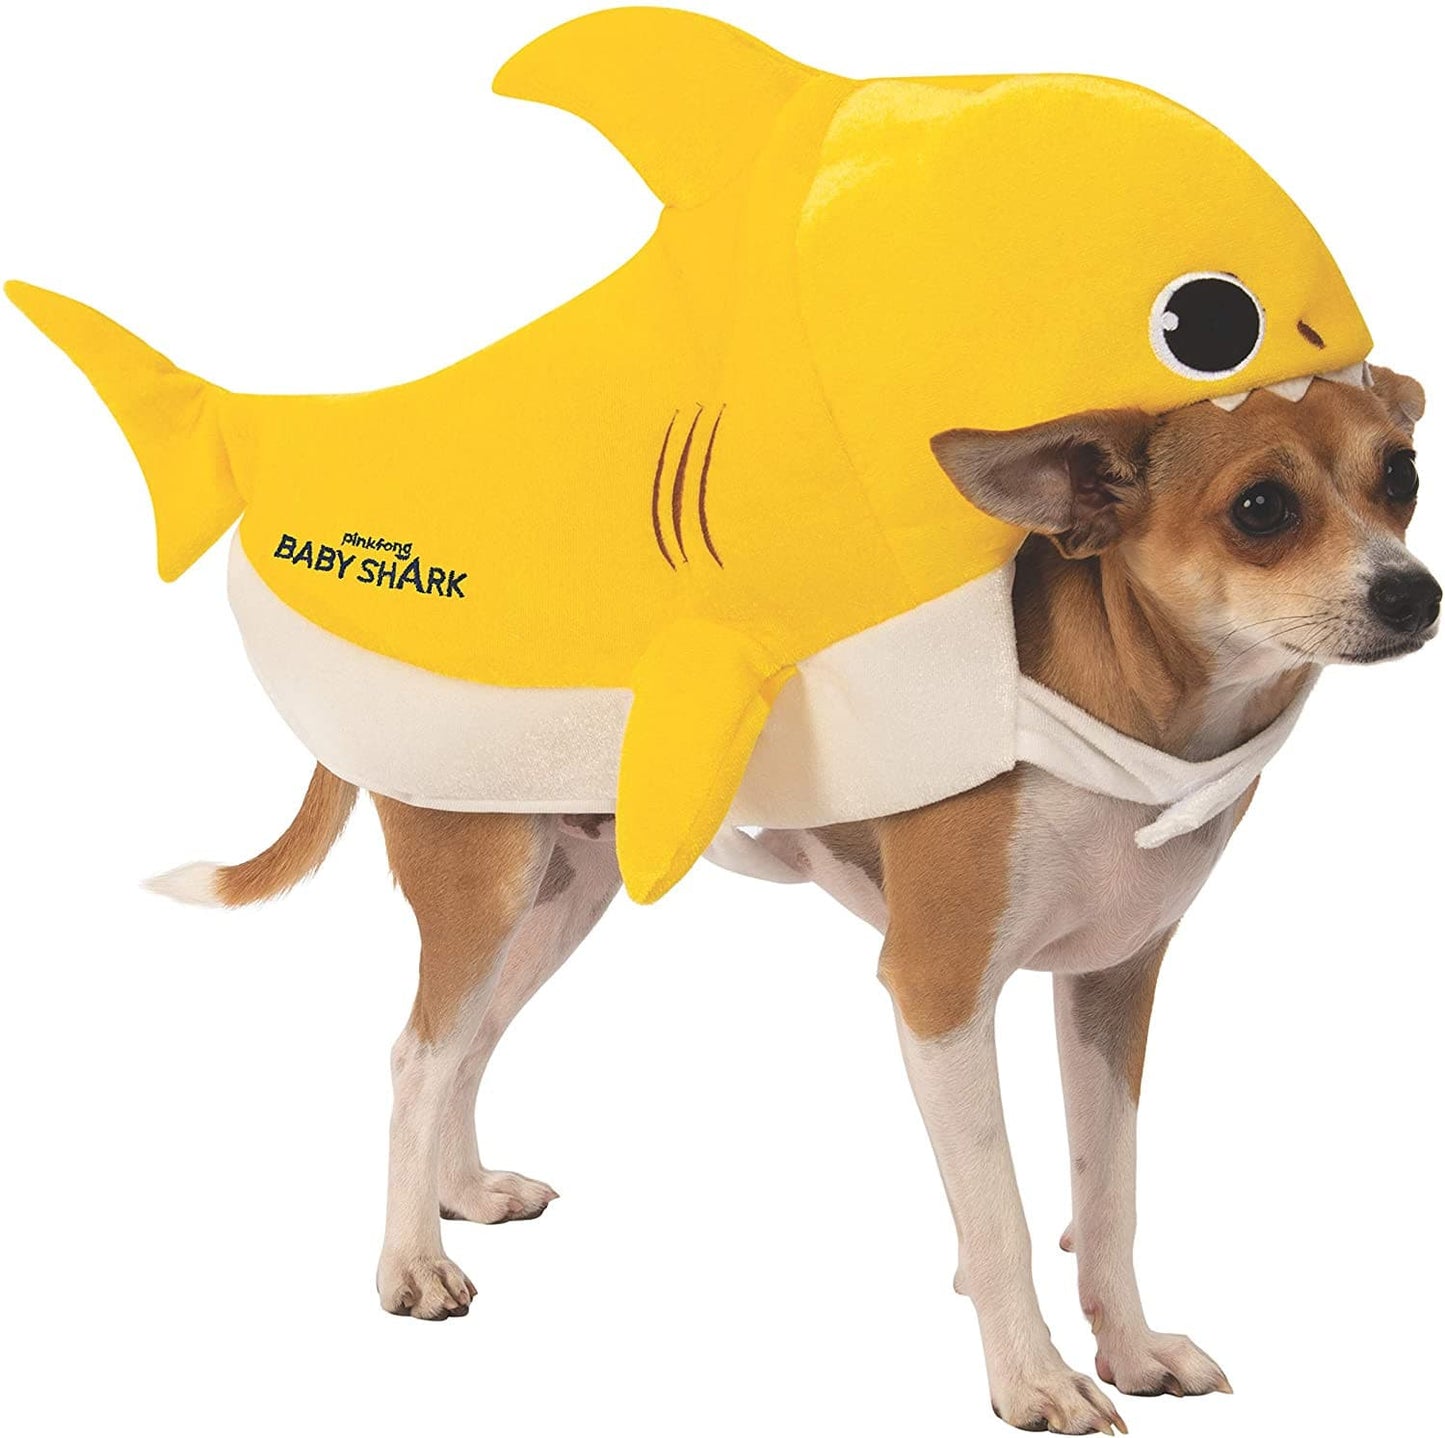 Baby Shark Pet Costume.